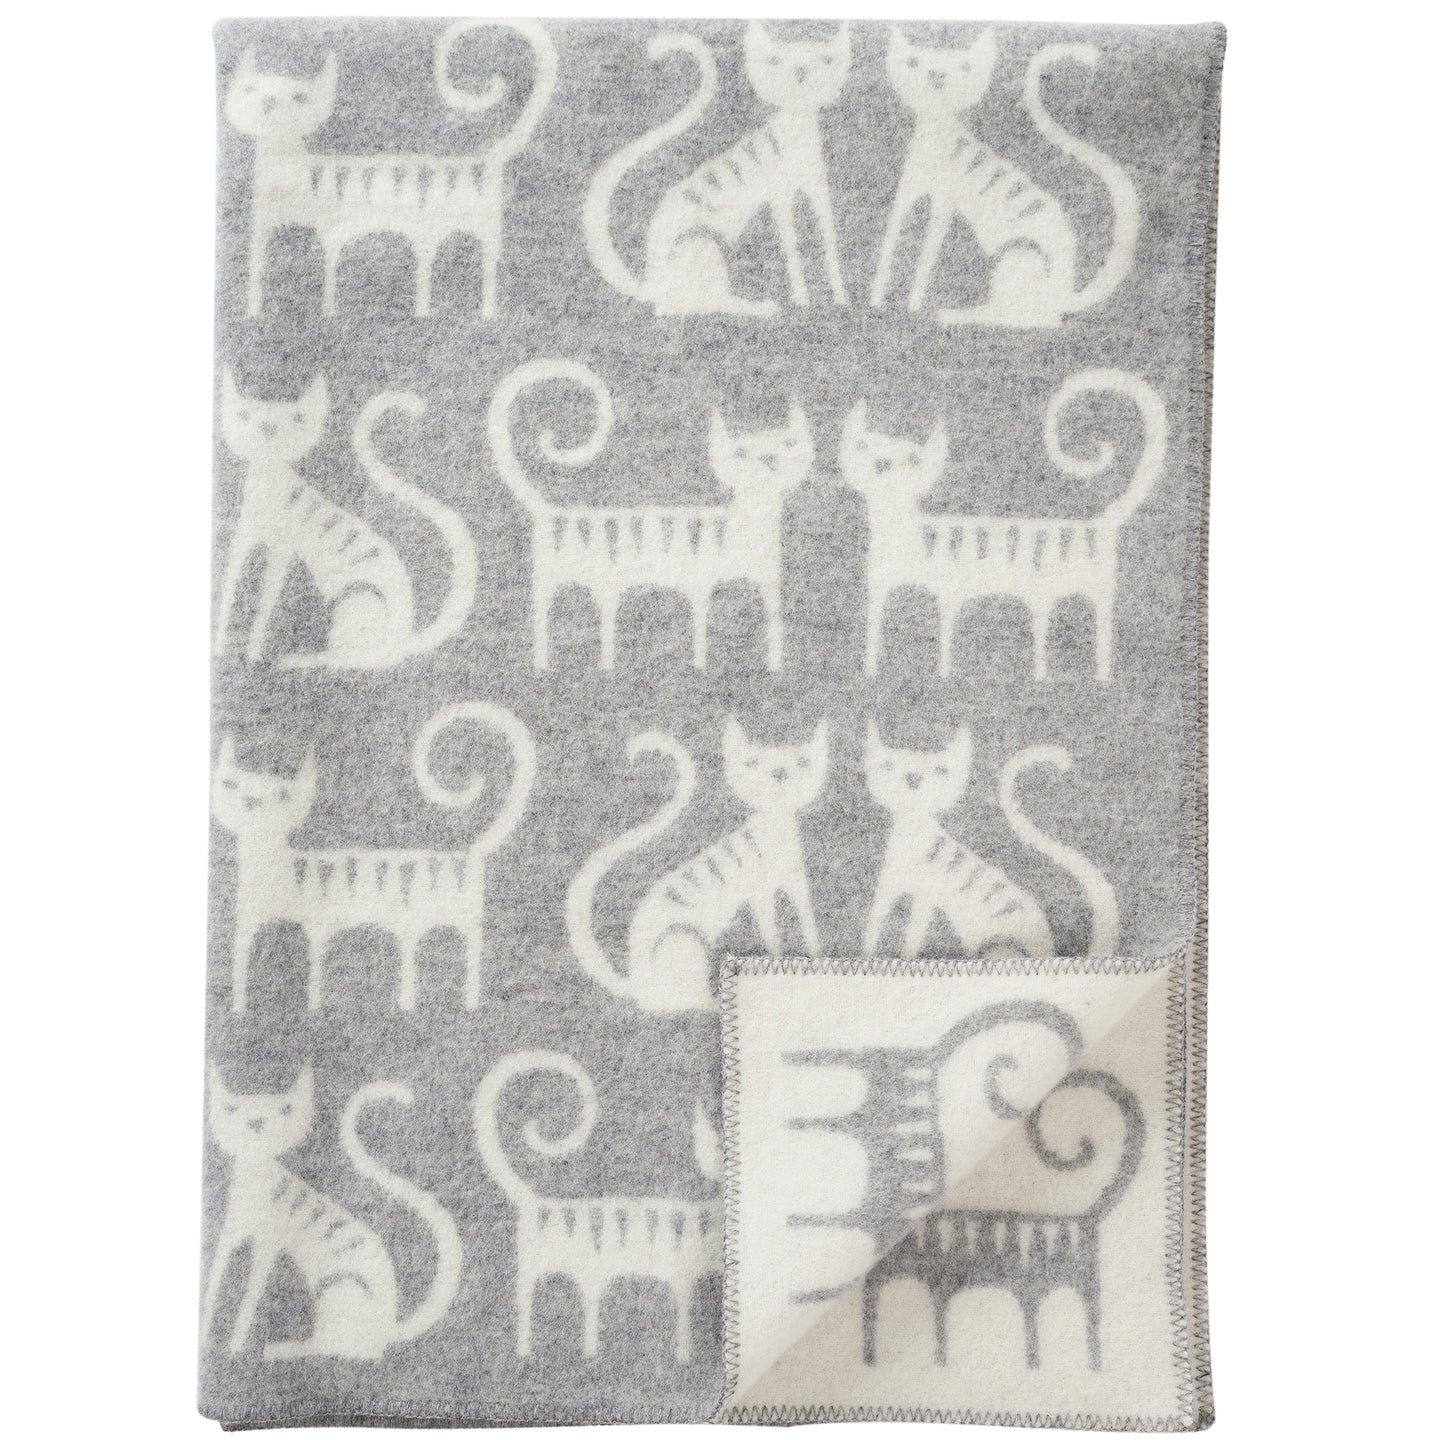 Cat Couple Grey Lambswool Blanket